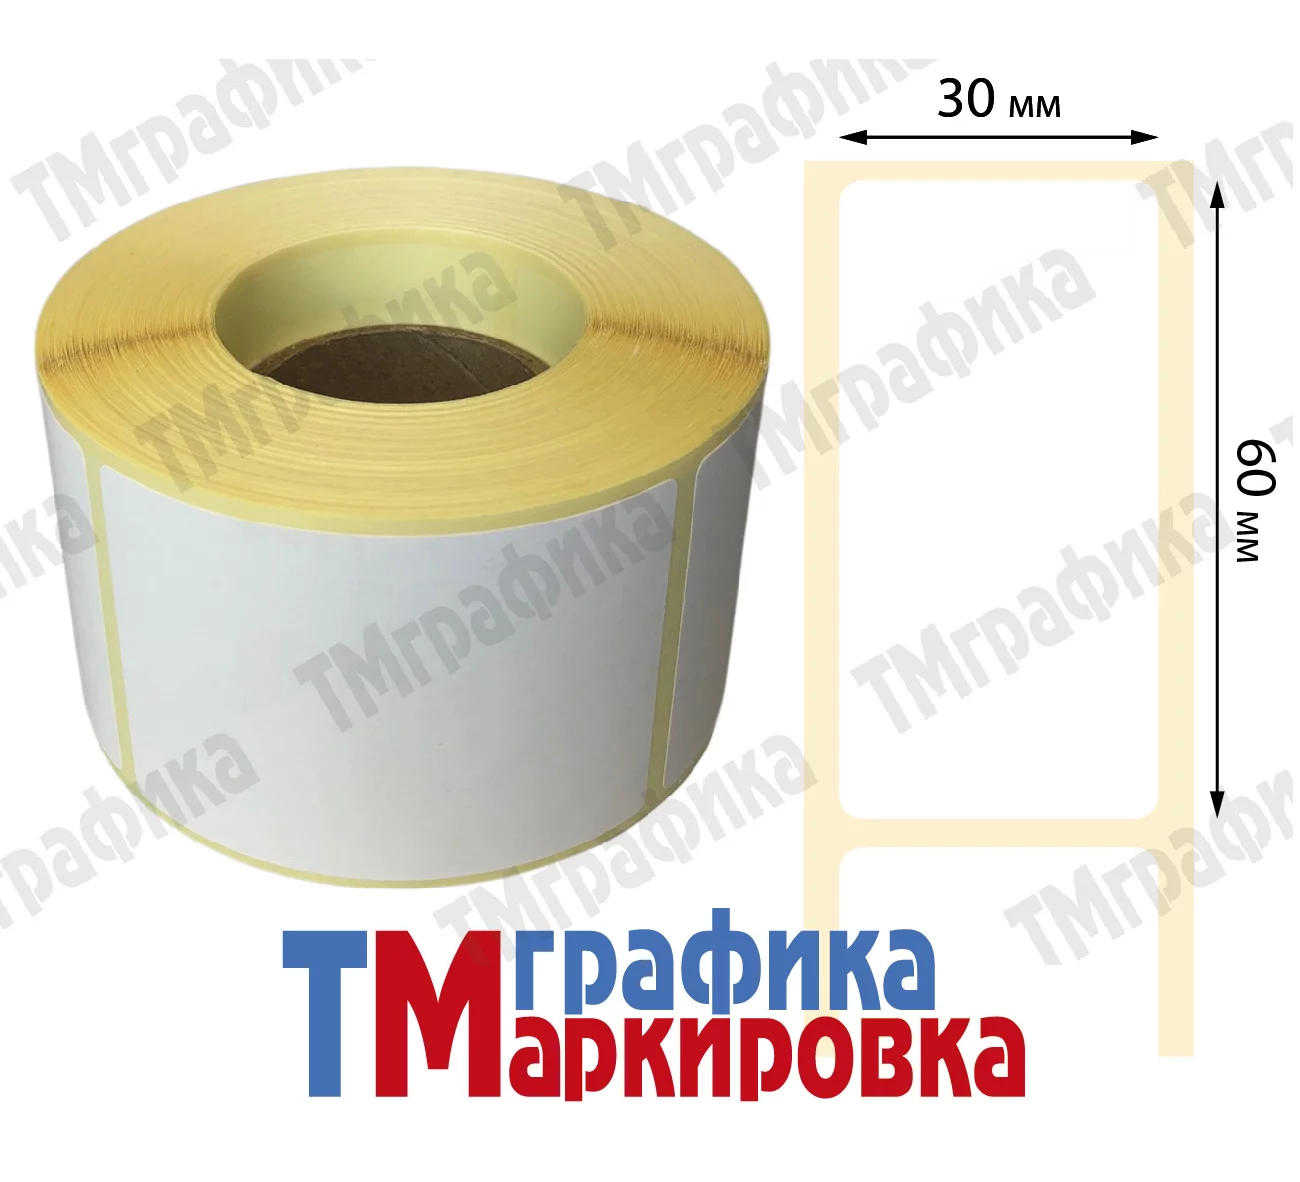 Термотрансферные этикетки в порошковом пропиленовом рулоне диаметром 40 мм 700 шт. распечатаны на принтере (слайды)